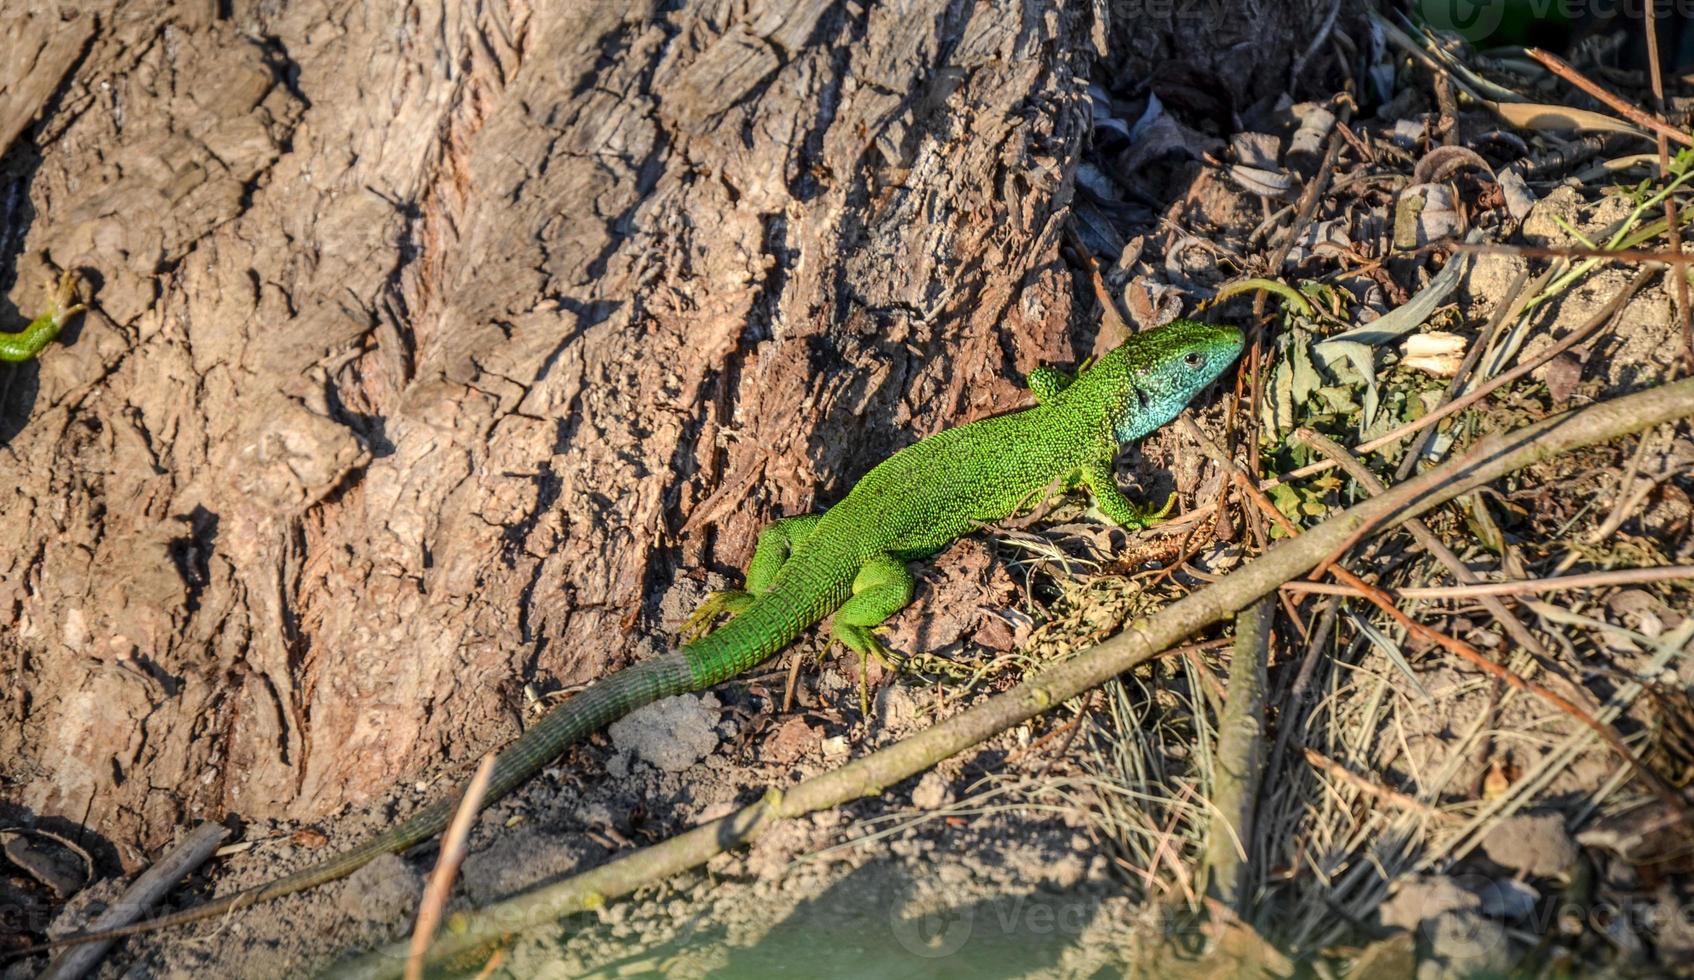 lézard gecko méditerranéen vert et bleu repéré sur un sol brun près du tronc d'arbre photo